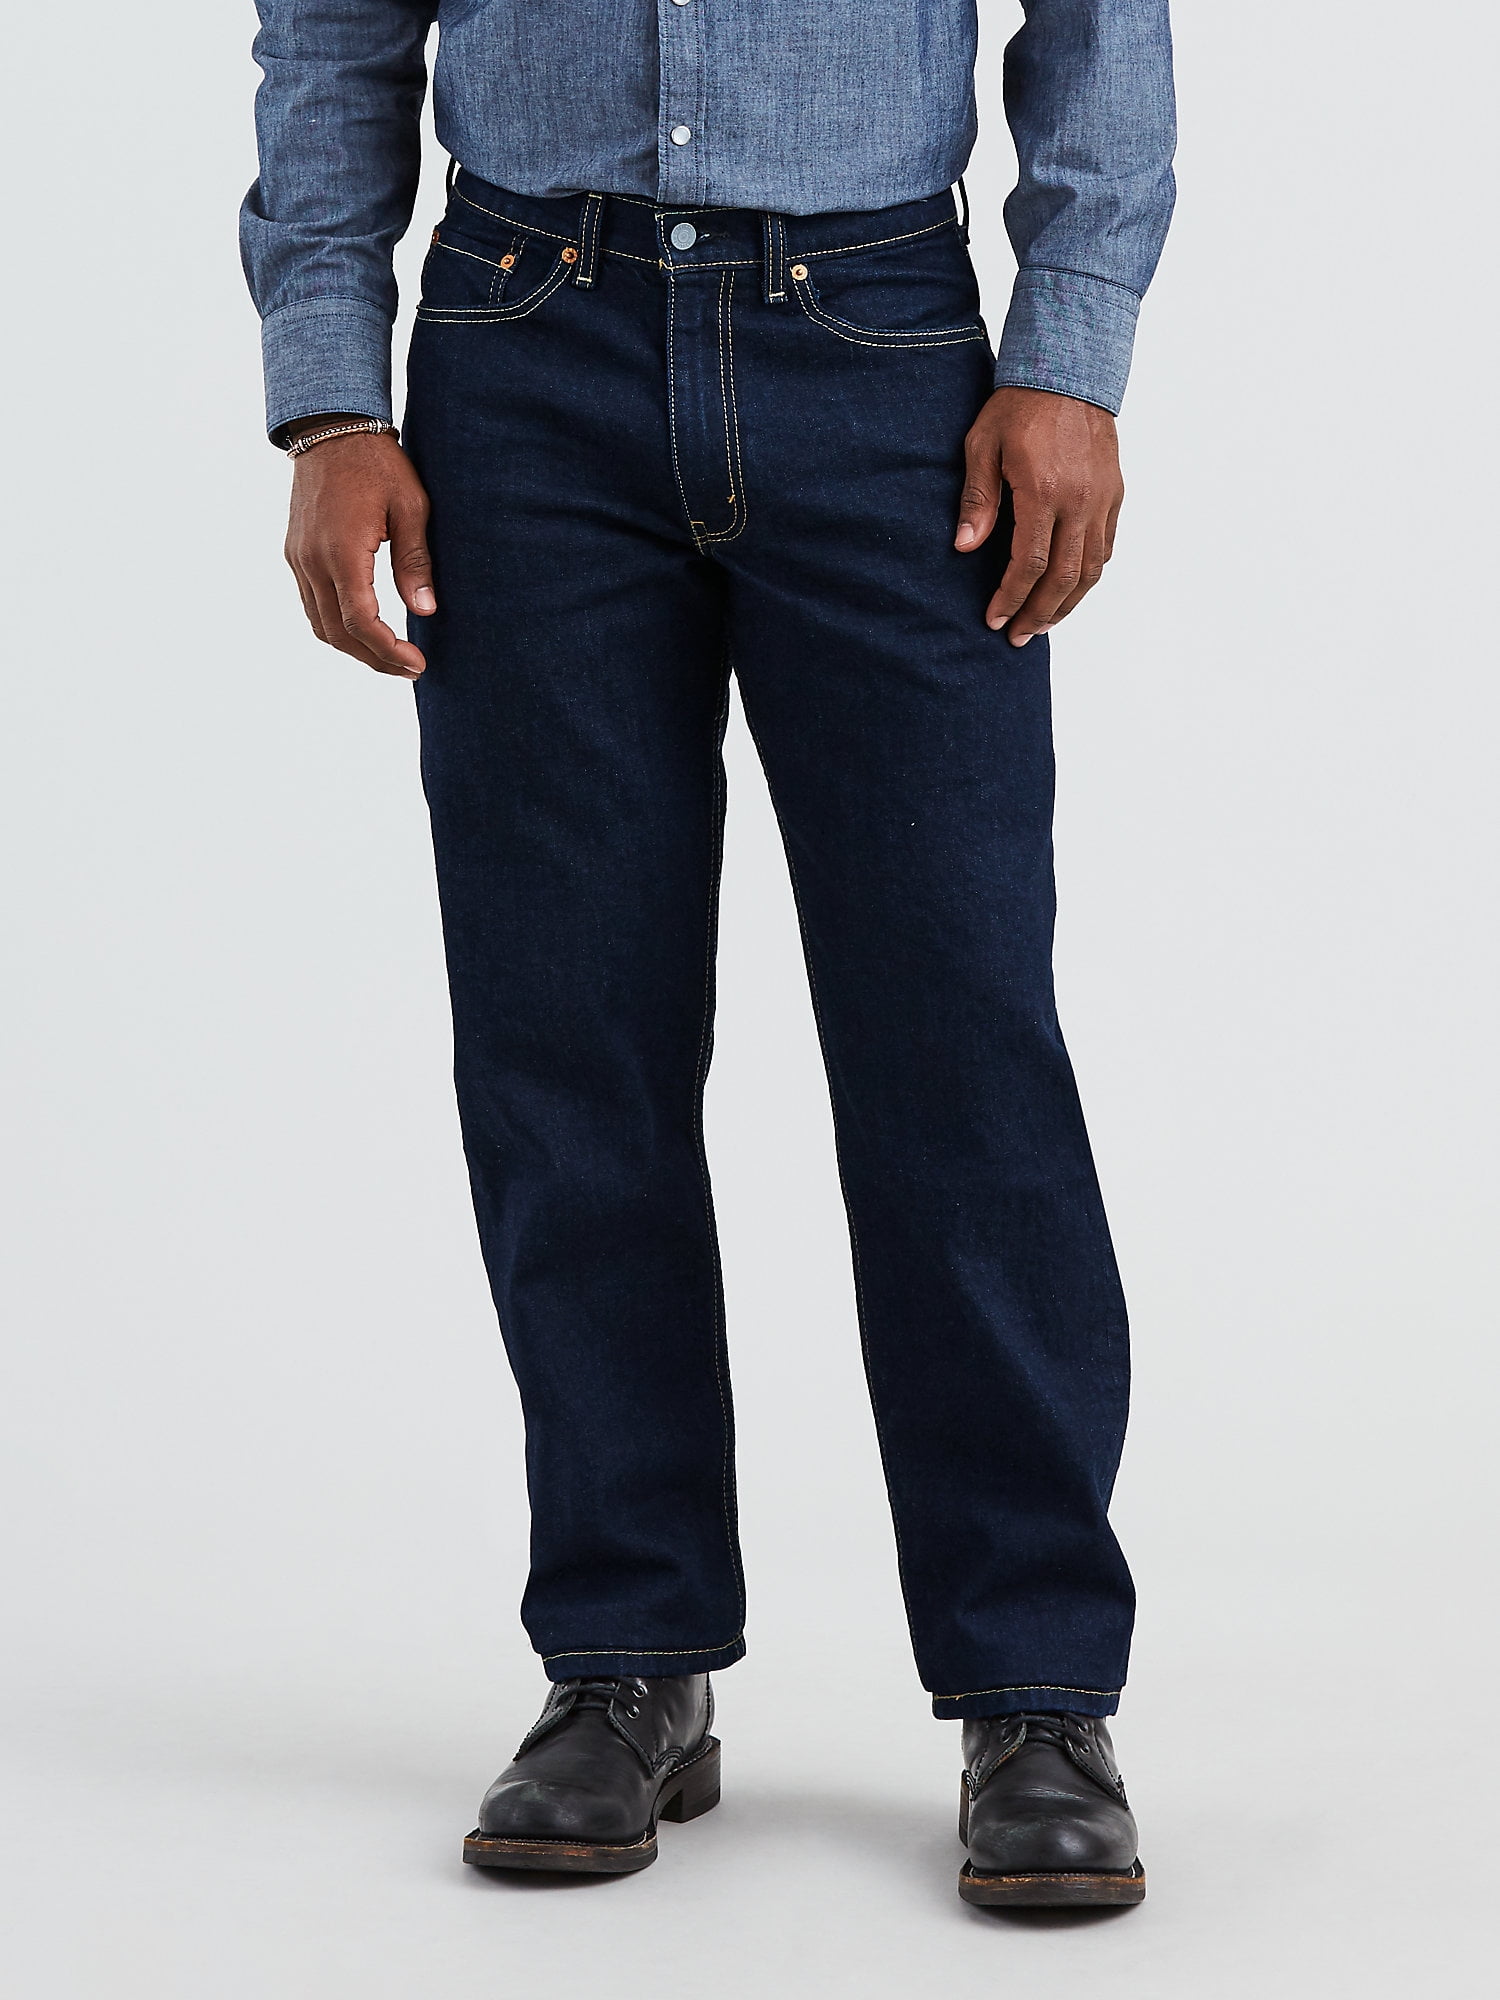 levis 550 mens jeans on sale